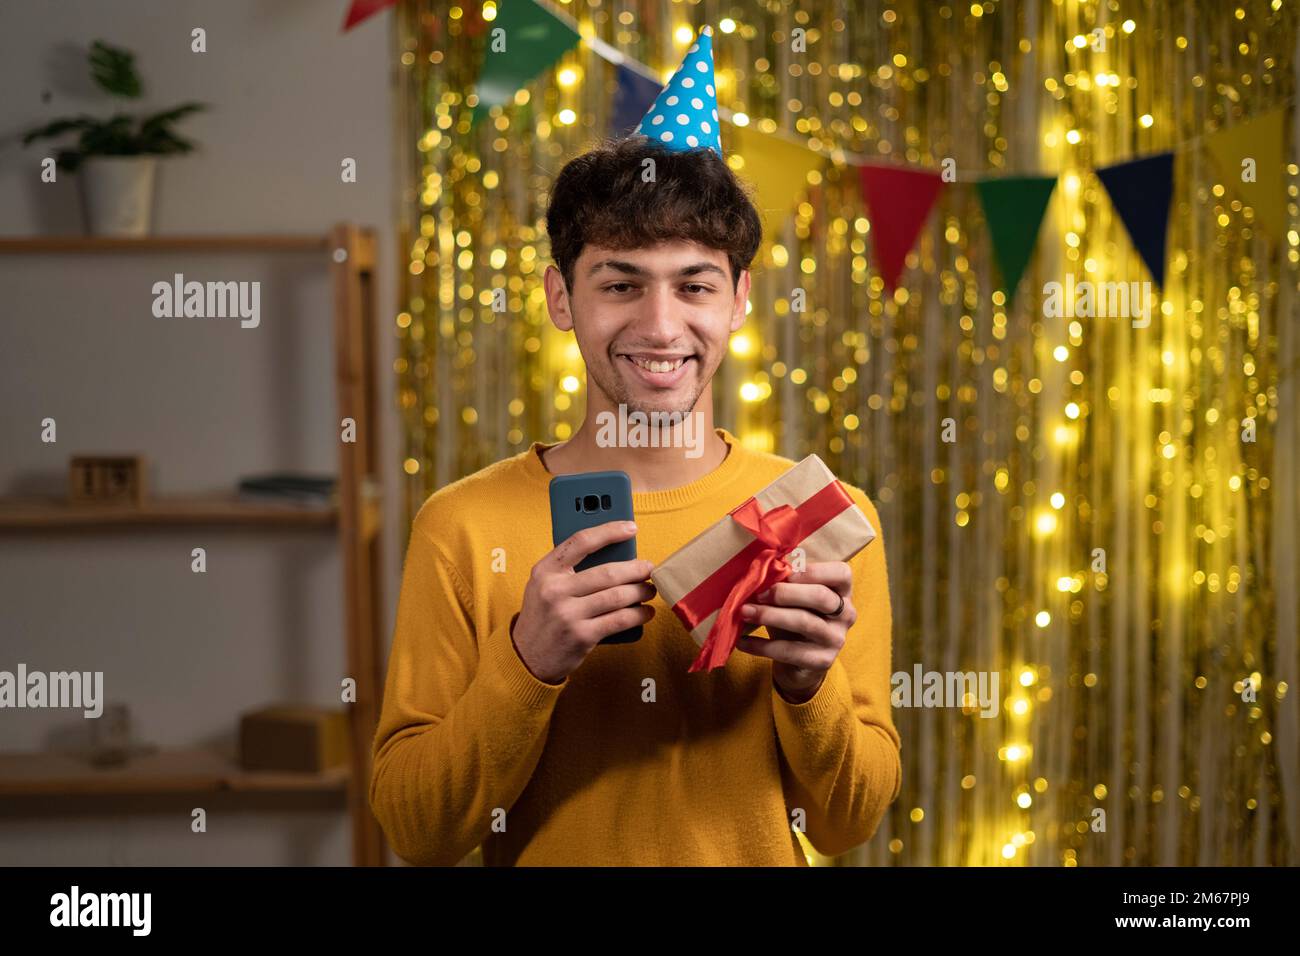 Ein glücklicher junger arabischer Mann erhielt online eine Geburtstagsgeschenkbestellung mit einer mobilen App Geburtstagsparty für Schüler Stockfoto